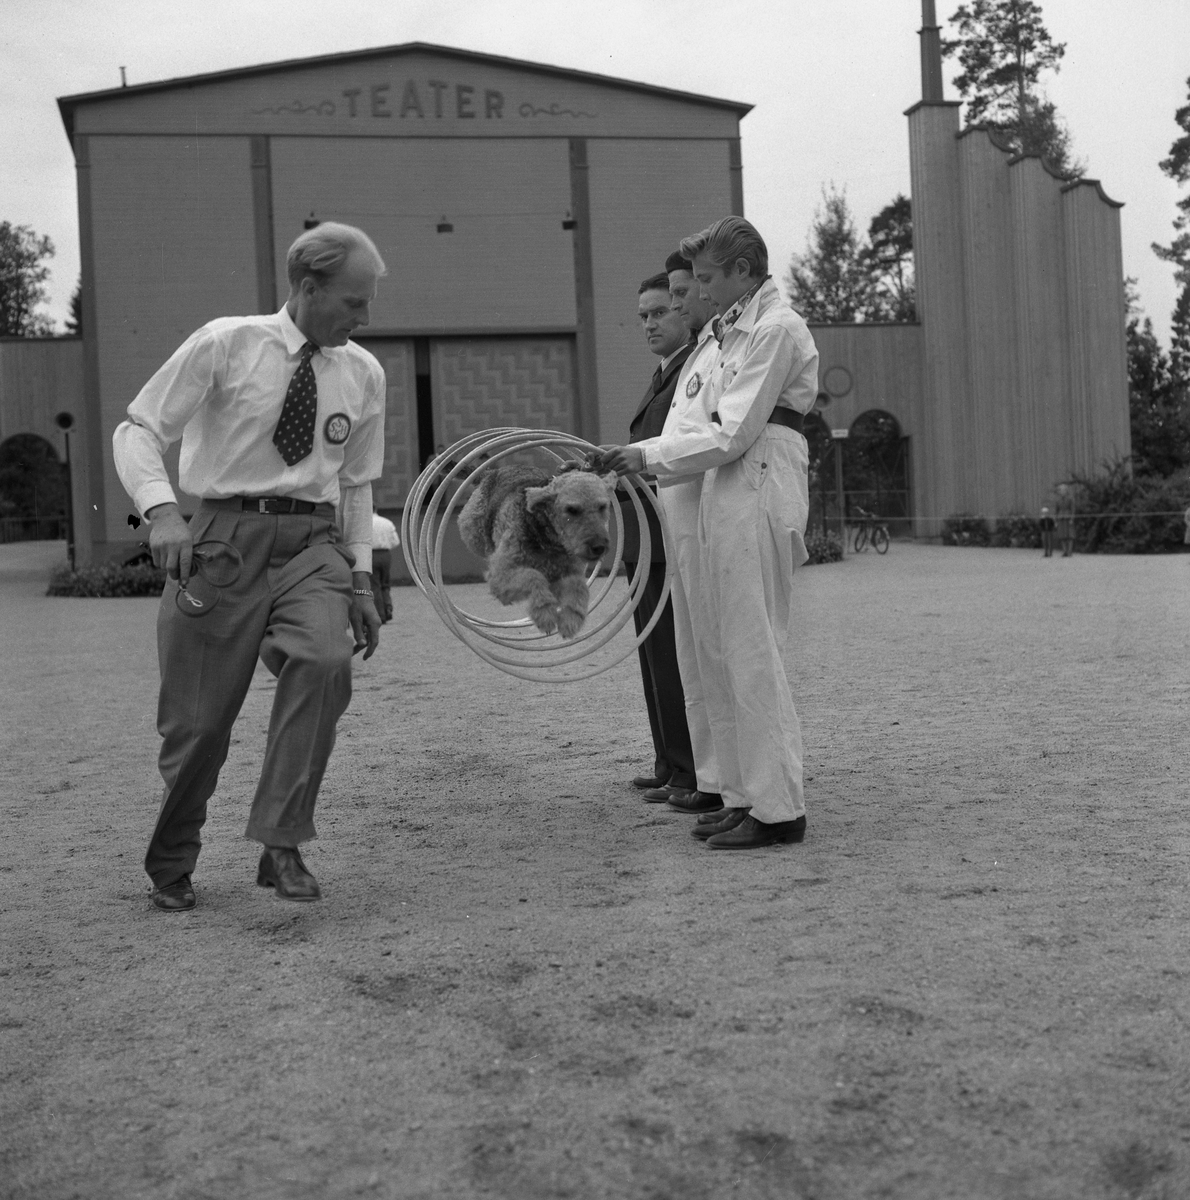 Hundutställning i Folkparken.
27 september 1955.